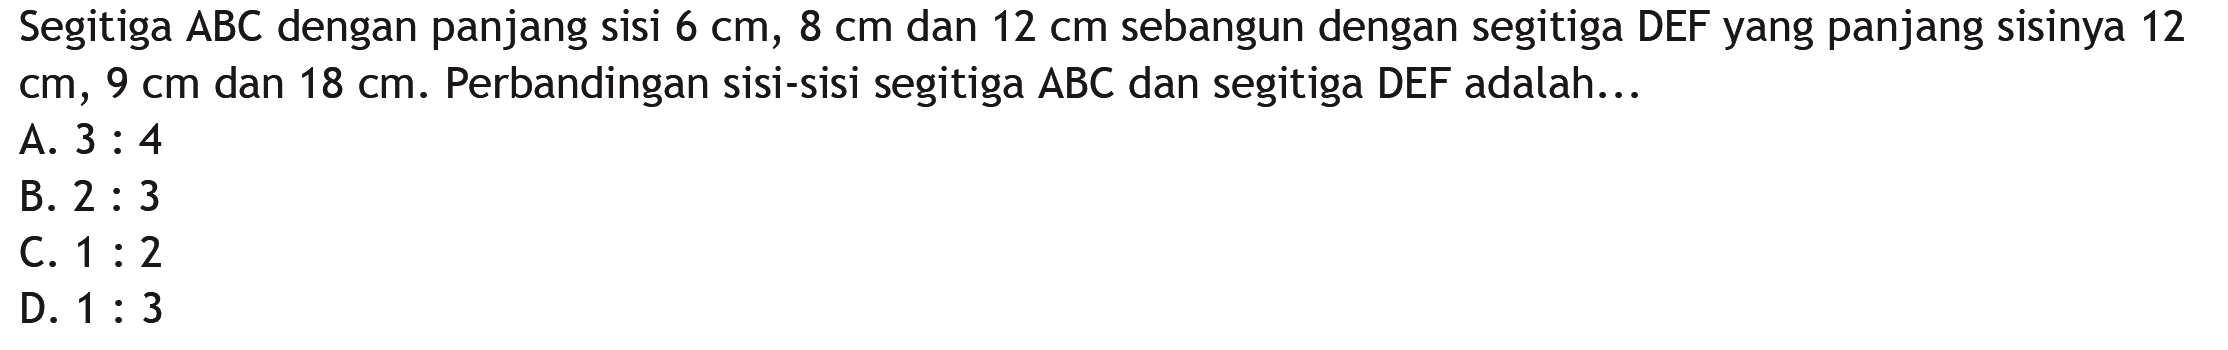 Segitiga ABC dengan panjang sisi  6 cm, 8 cm  dan  12 cm  sebangun dengan segitiga DEFyang panjang sisinya 12  cm, 9 cm  dan  18 cm .  Perbandingan sisi-sisi segitiga  ABC  dan segitiga DEF adalah...